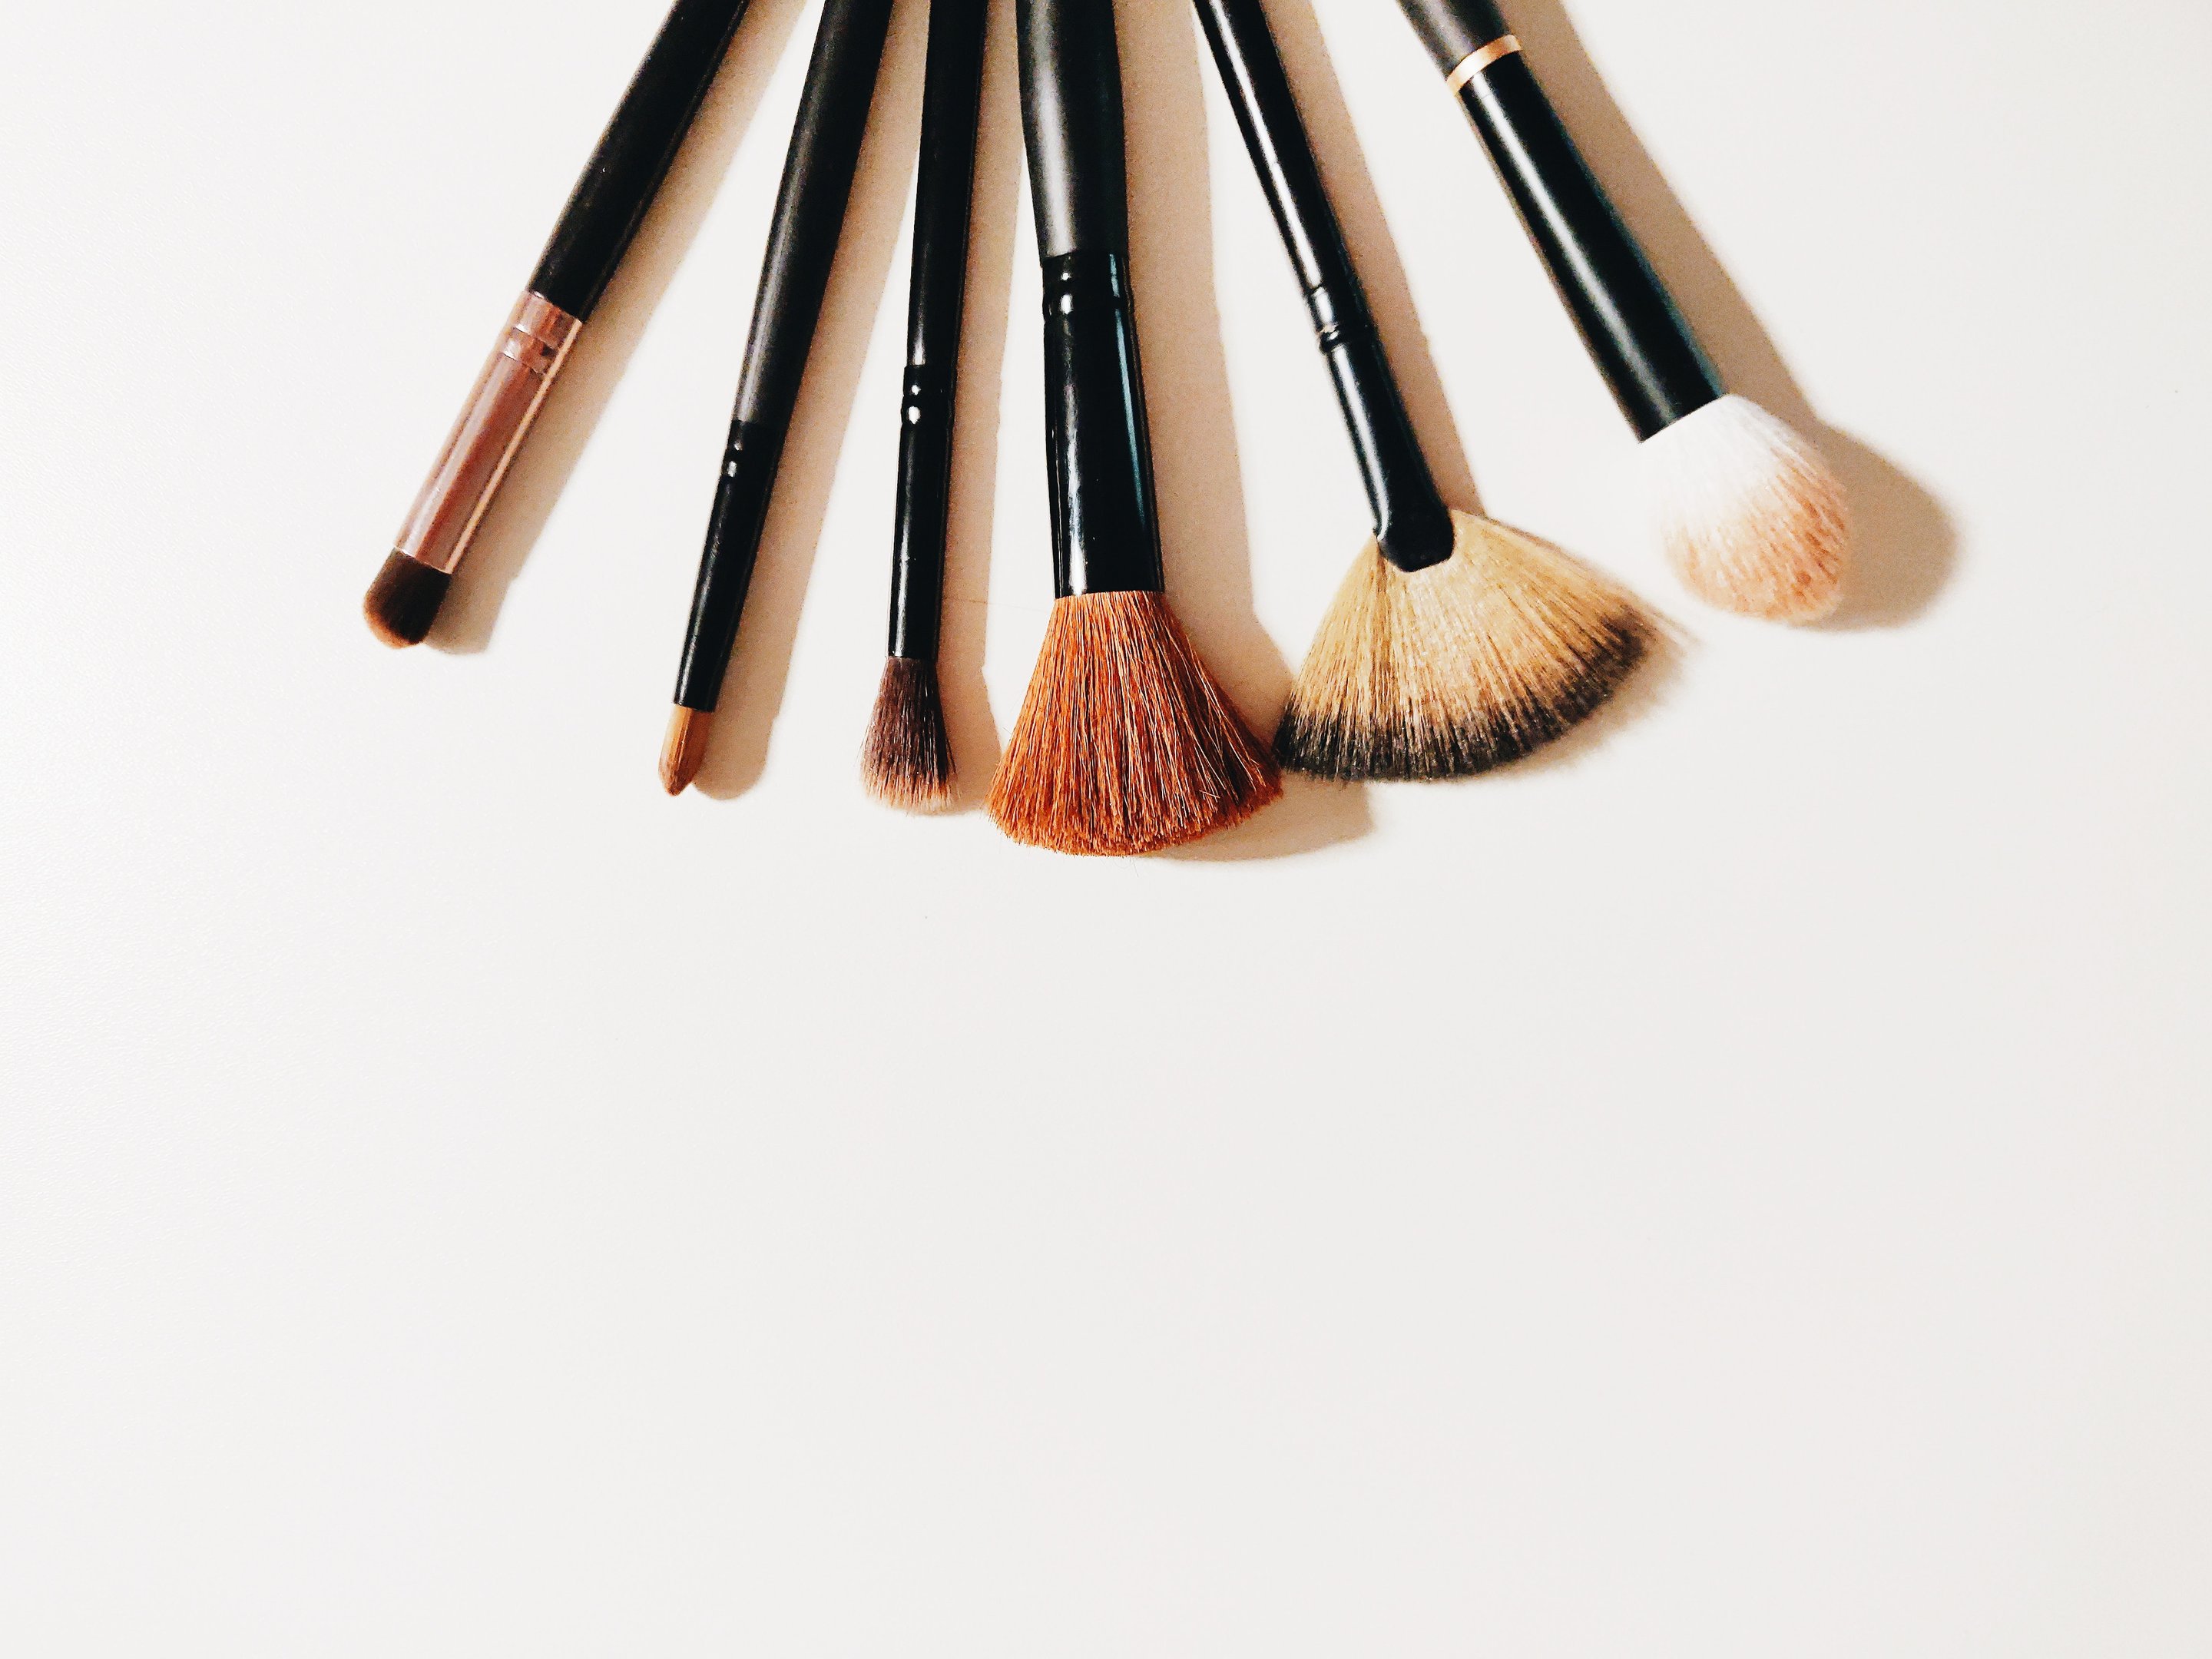 Pinceis de maquiagem: Por que é importante limpar e como fazer isso? –  Dicas da Mary